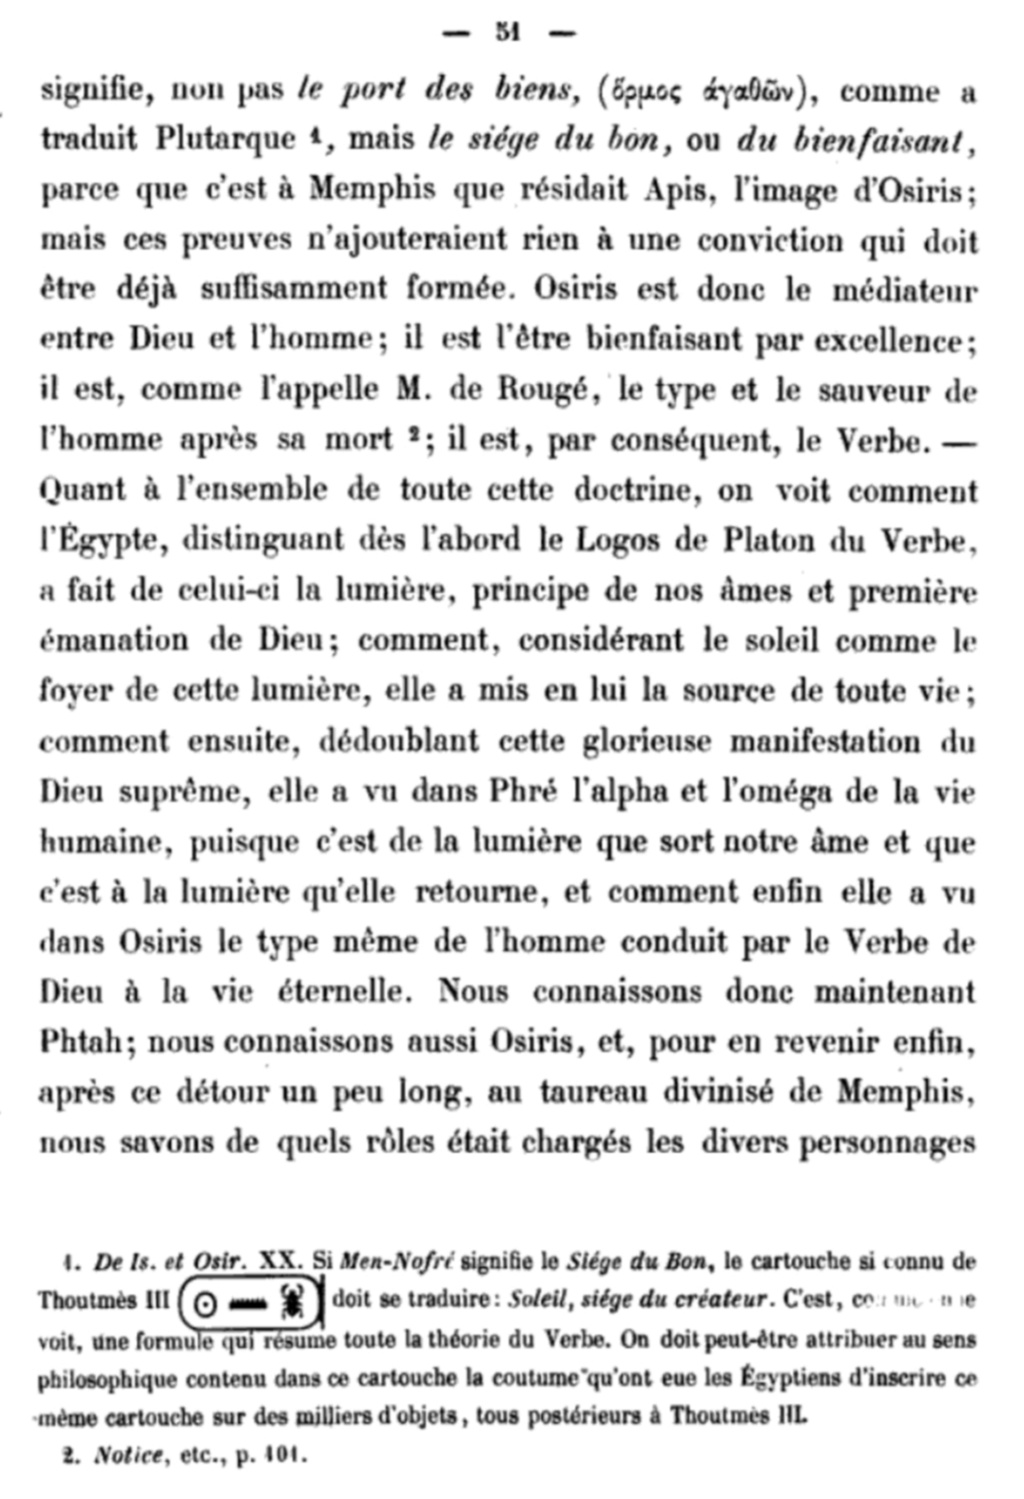 La franc-maçonnerie, la Gnose et le gnosticisme.  - Page 4 20200715